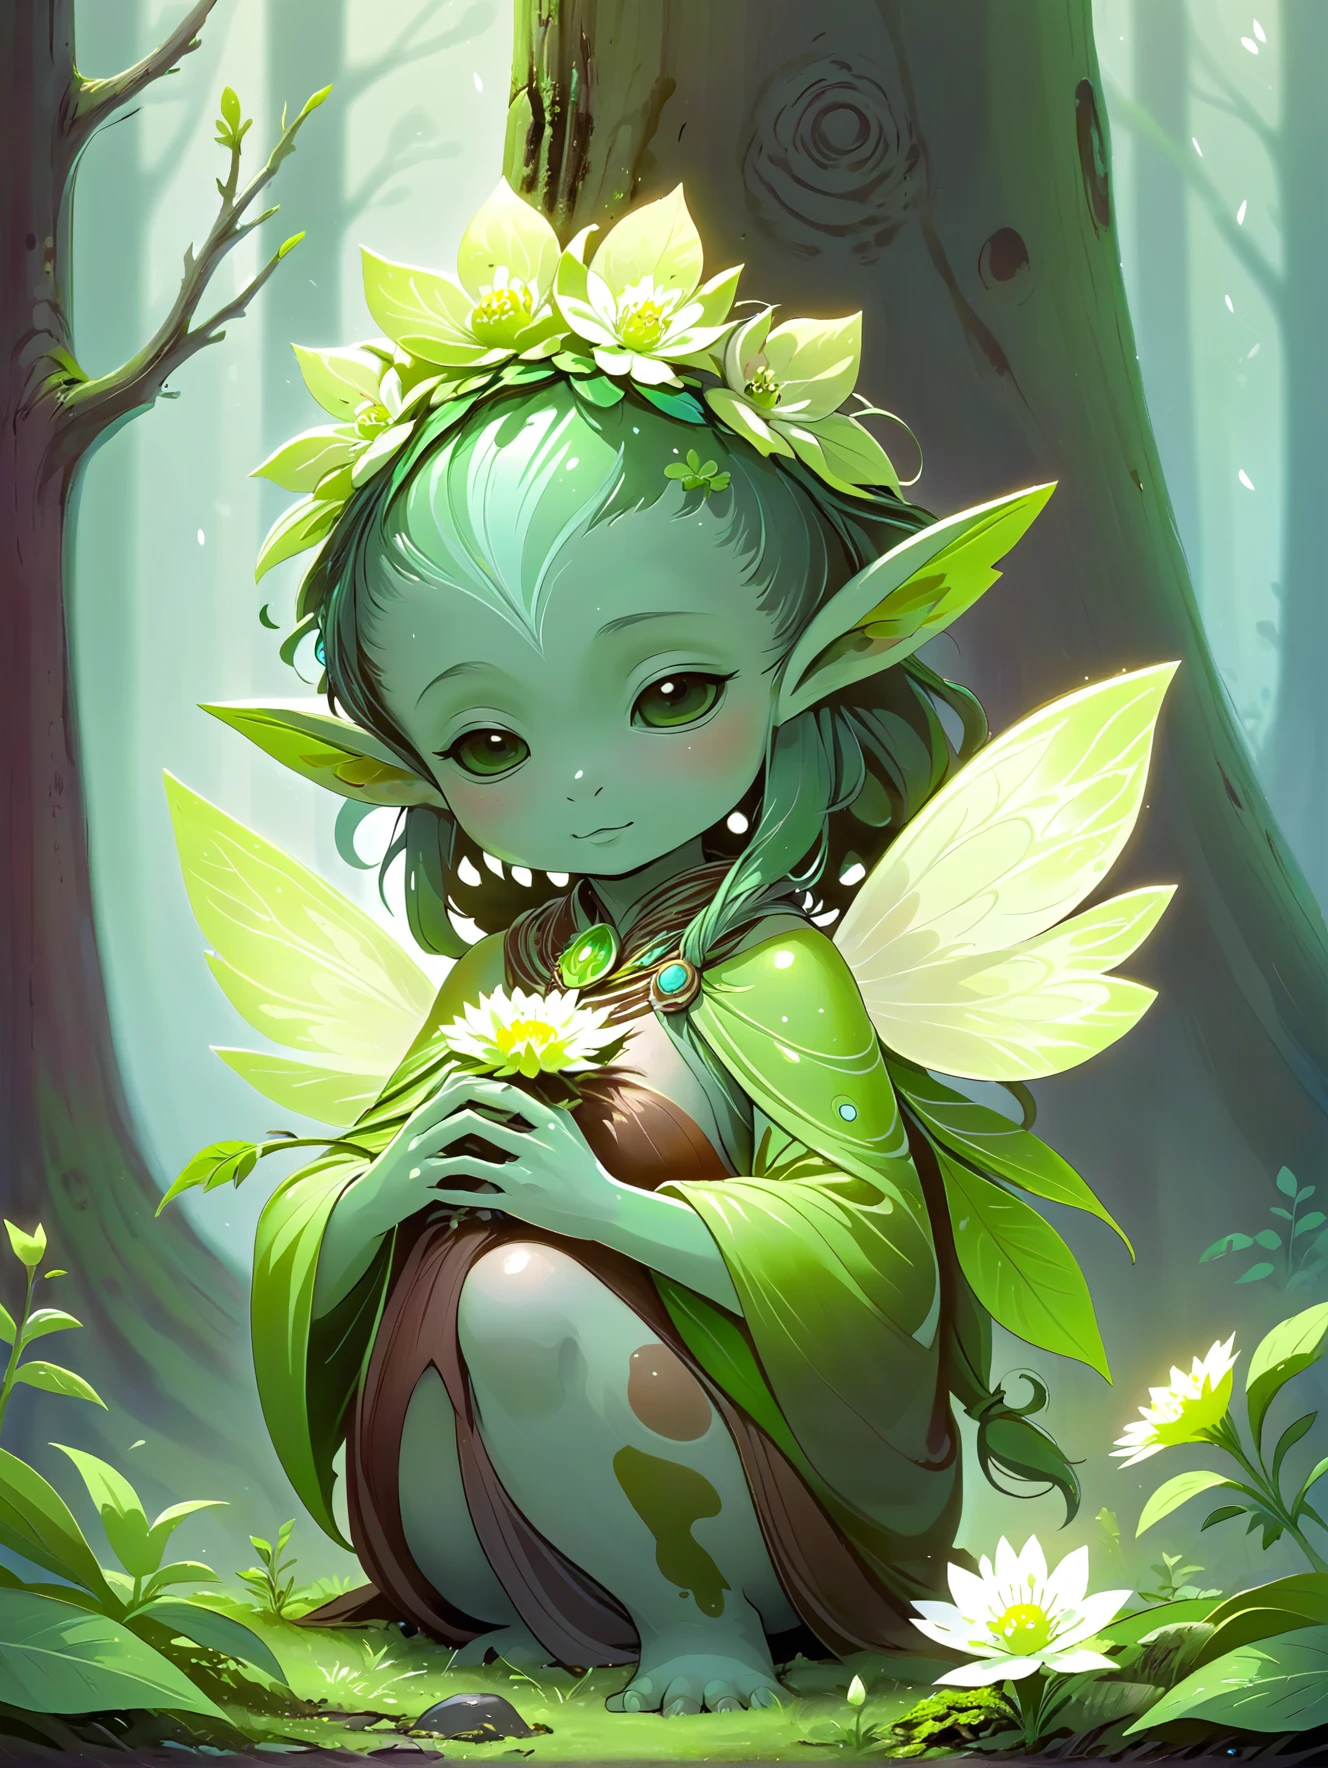 Um espírito da terra, com um tom verde musgo, cuidando de uma flor desabrochando em uma clareira na floresta.